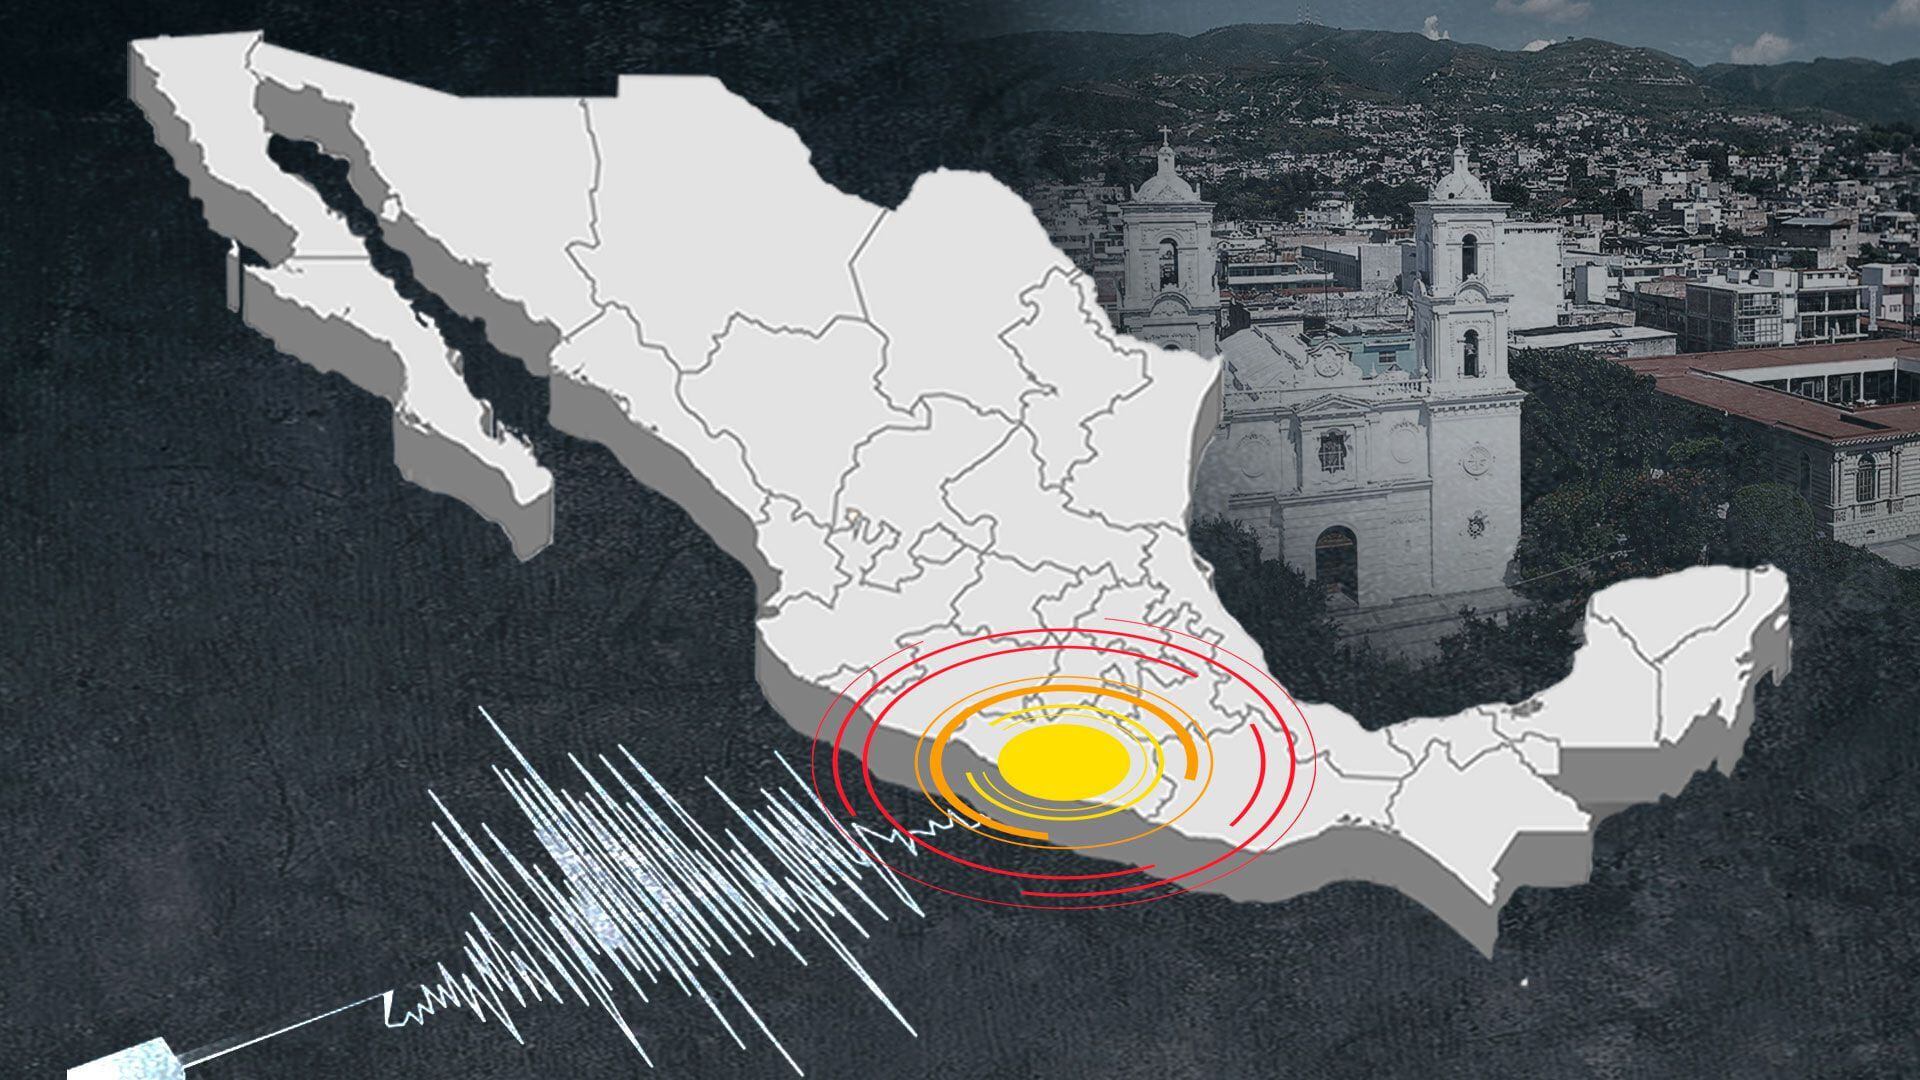 La información preliminar señala que el temblor tuvo epicentro en Arriaga. (Infobae)